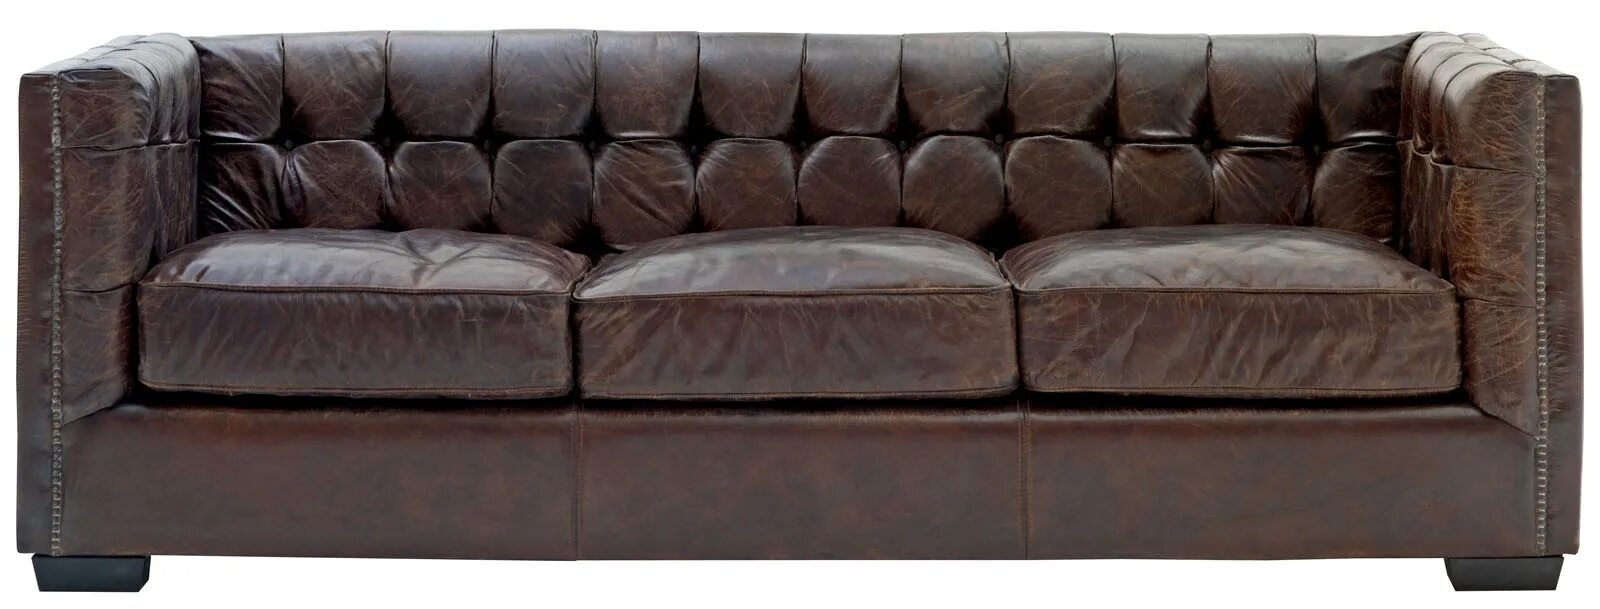 Спинка кожаного дивана. Стильный кожаный диван. Диван на прозрачном фоне. Коричневый диван. Кожаный диван на прозрачном фоне.